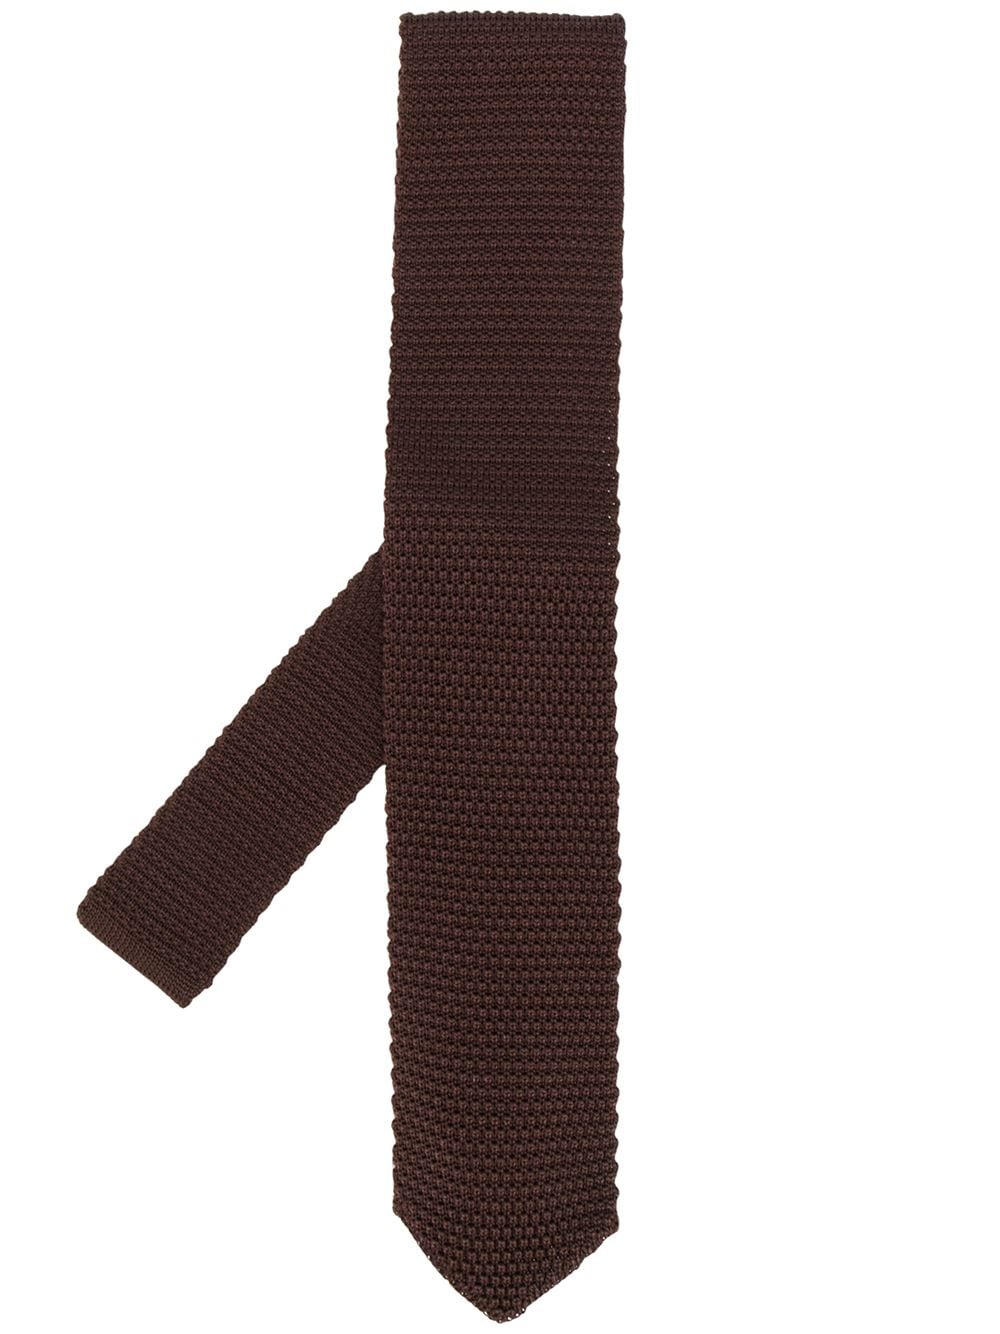 фото Brunello Cucinelli трикотажный галстук с заостренным концом